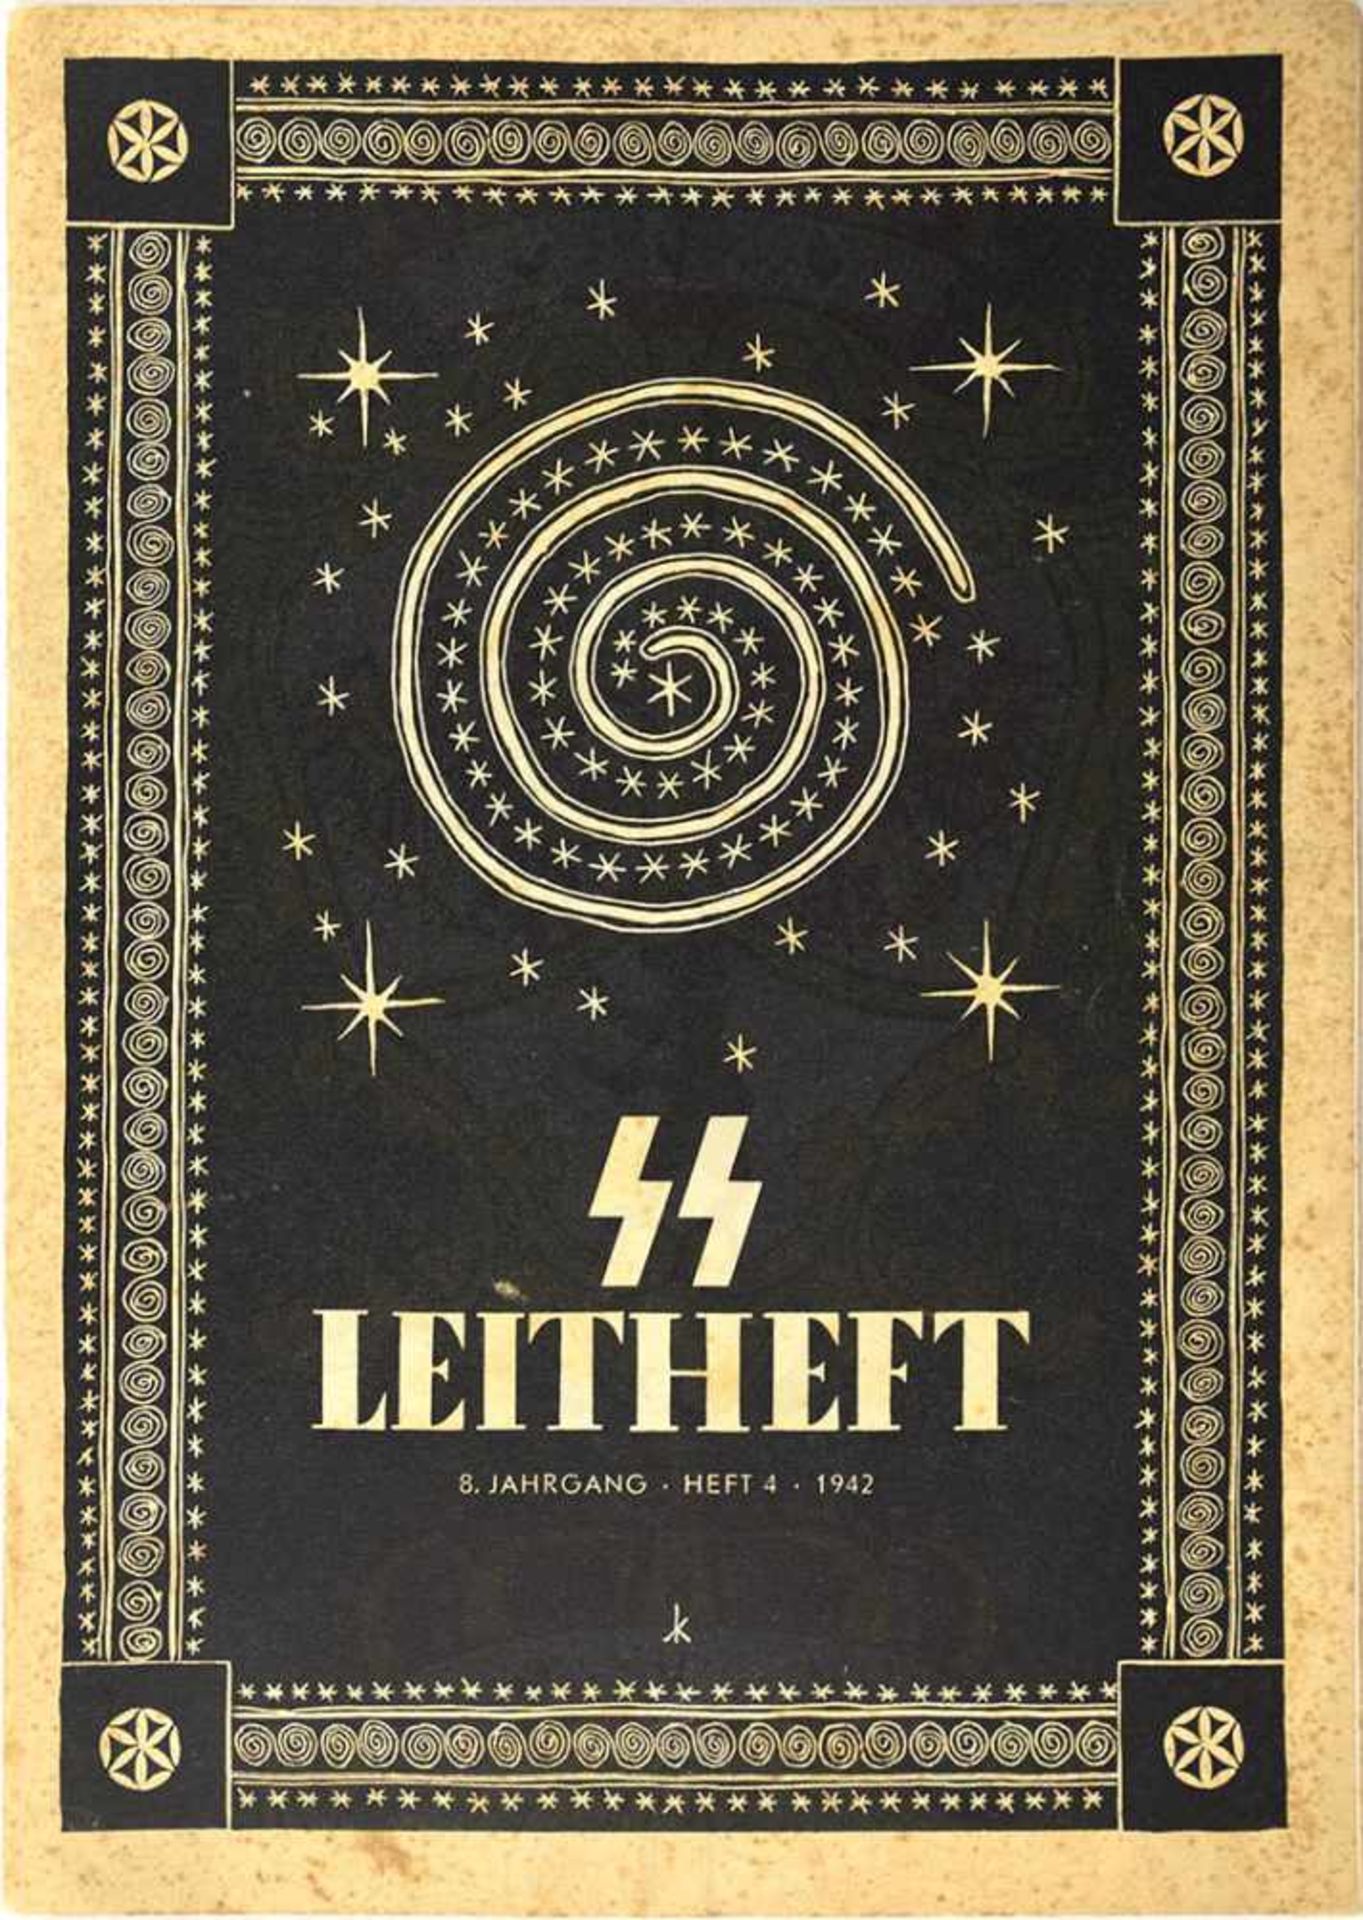 SS-LEITHEFT, 1942-Folge 4, 14 Fotos, zahlr. Zeichnungen, 32 Textseiten, Umschlag m. kleinen